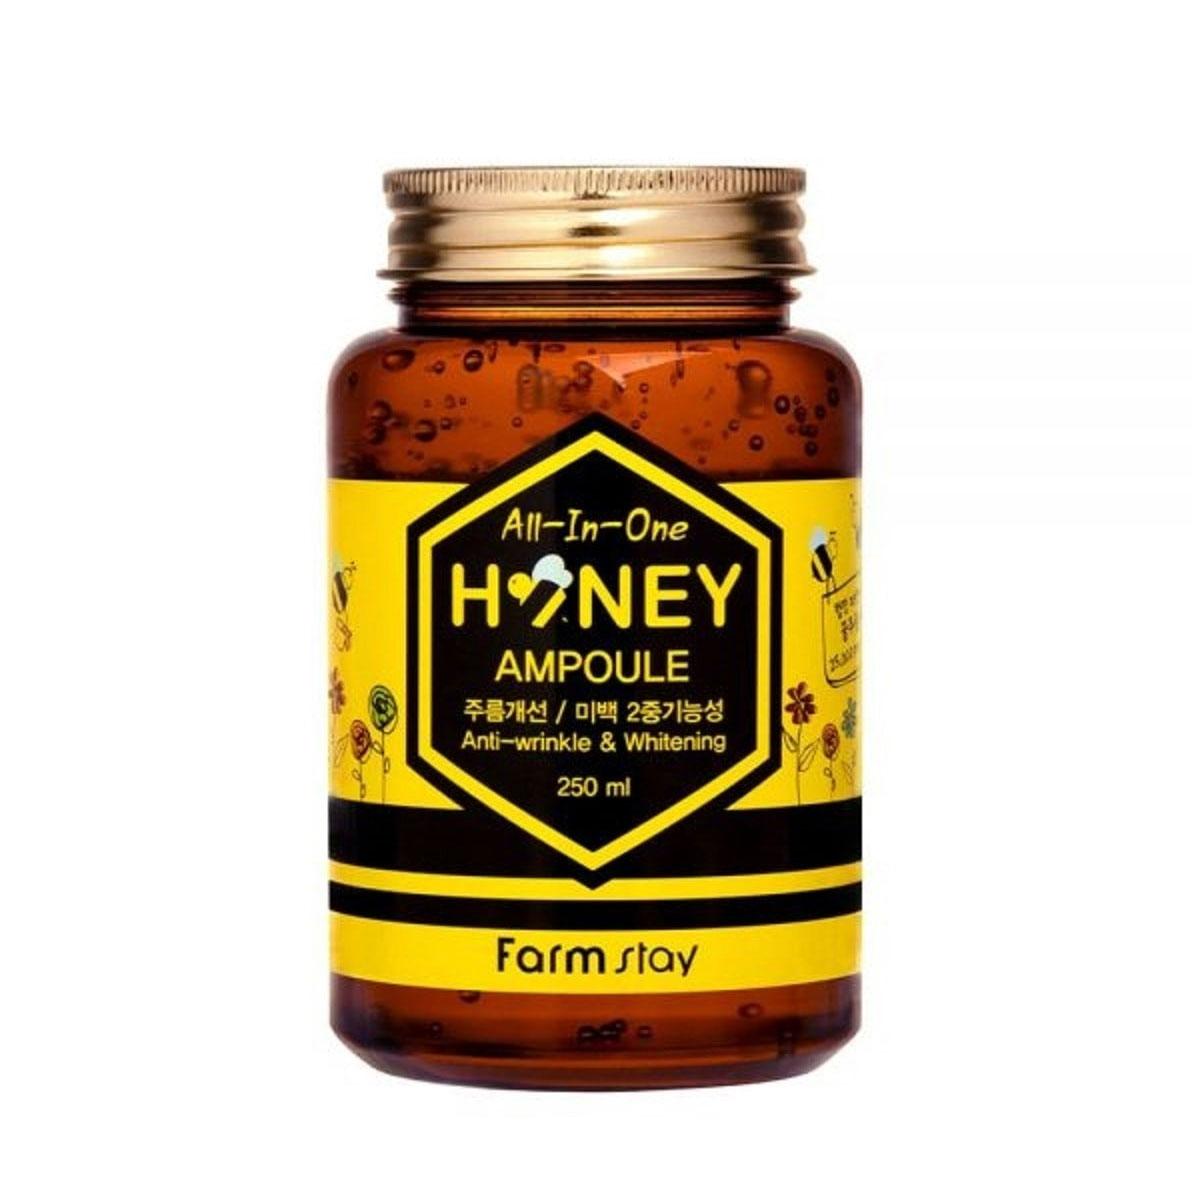 آمپول عسل - Honey all in one ampoule